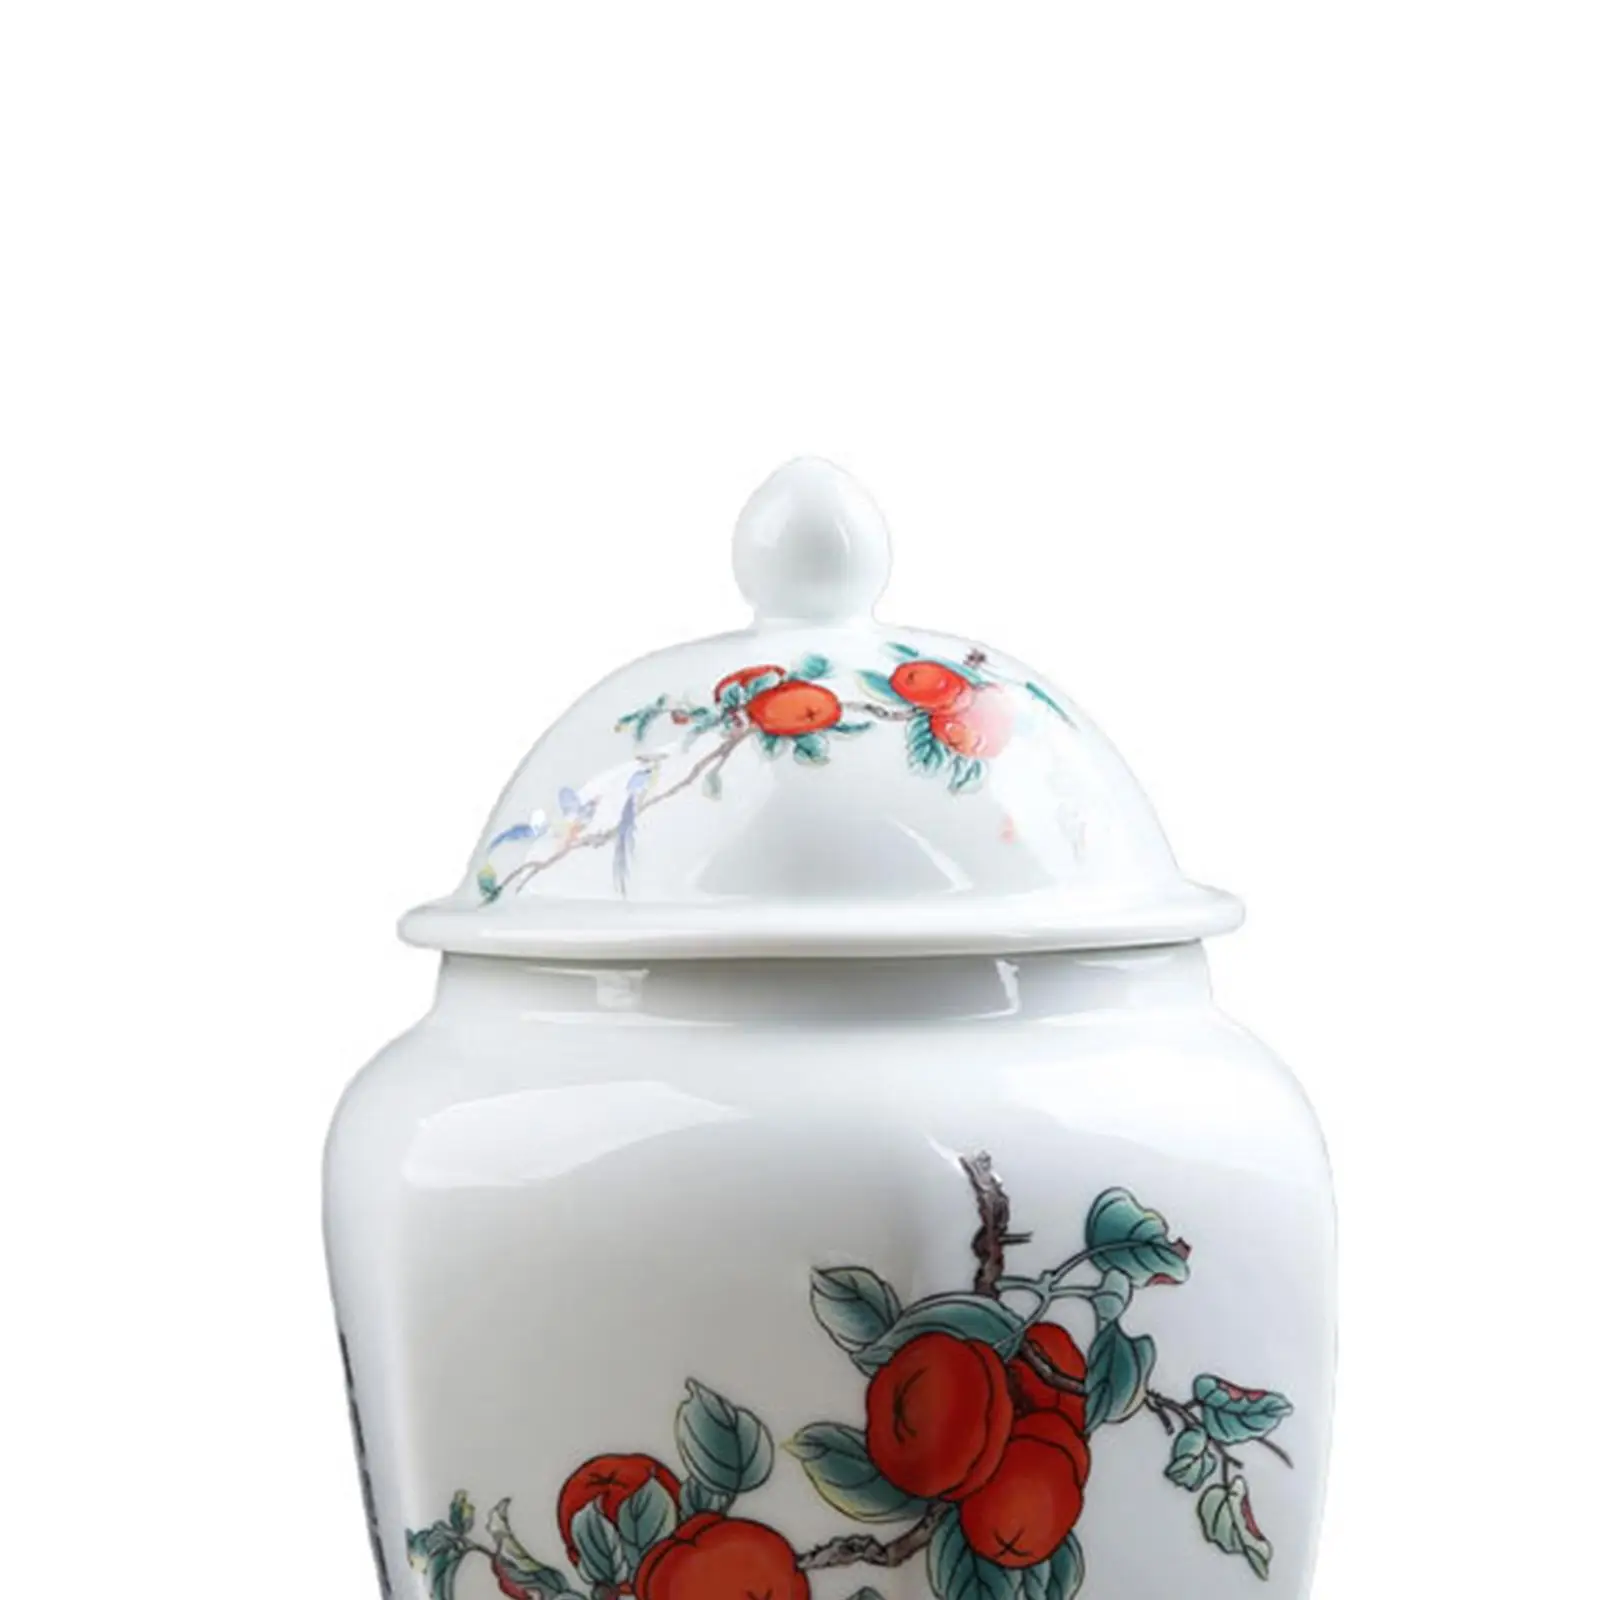 Chinese Style Porcelain Ginger Jar Loose Tea Storage Jar Glazed Flower Vase with images - 6